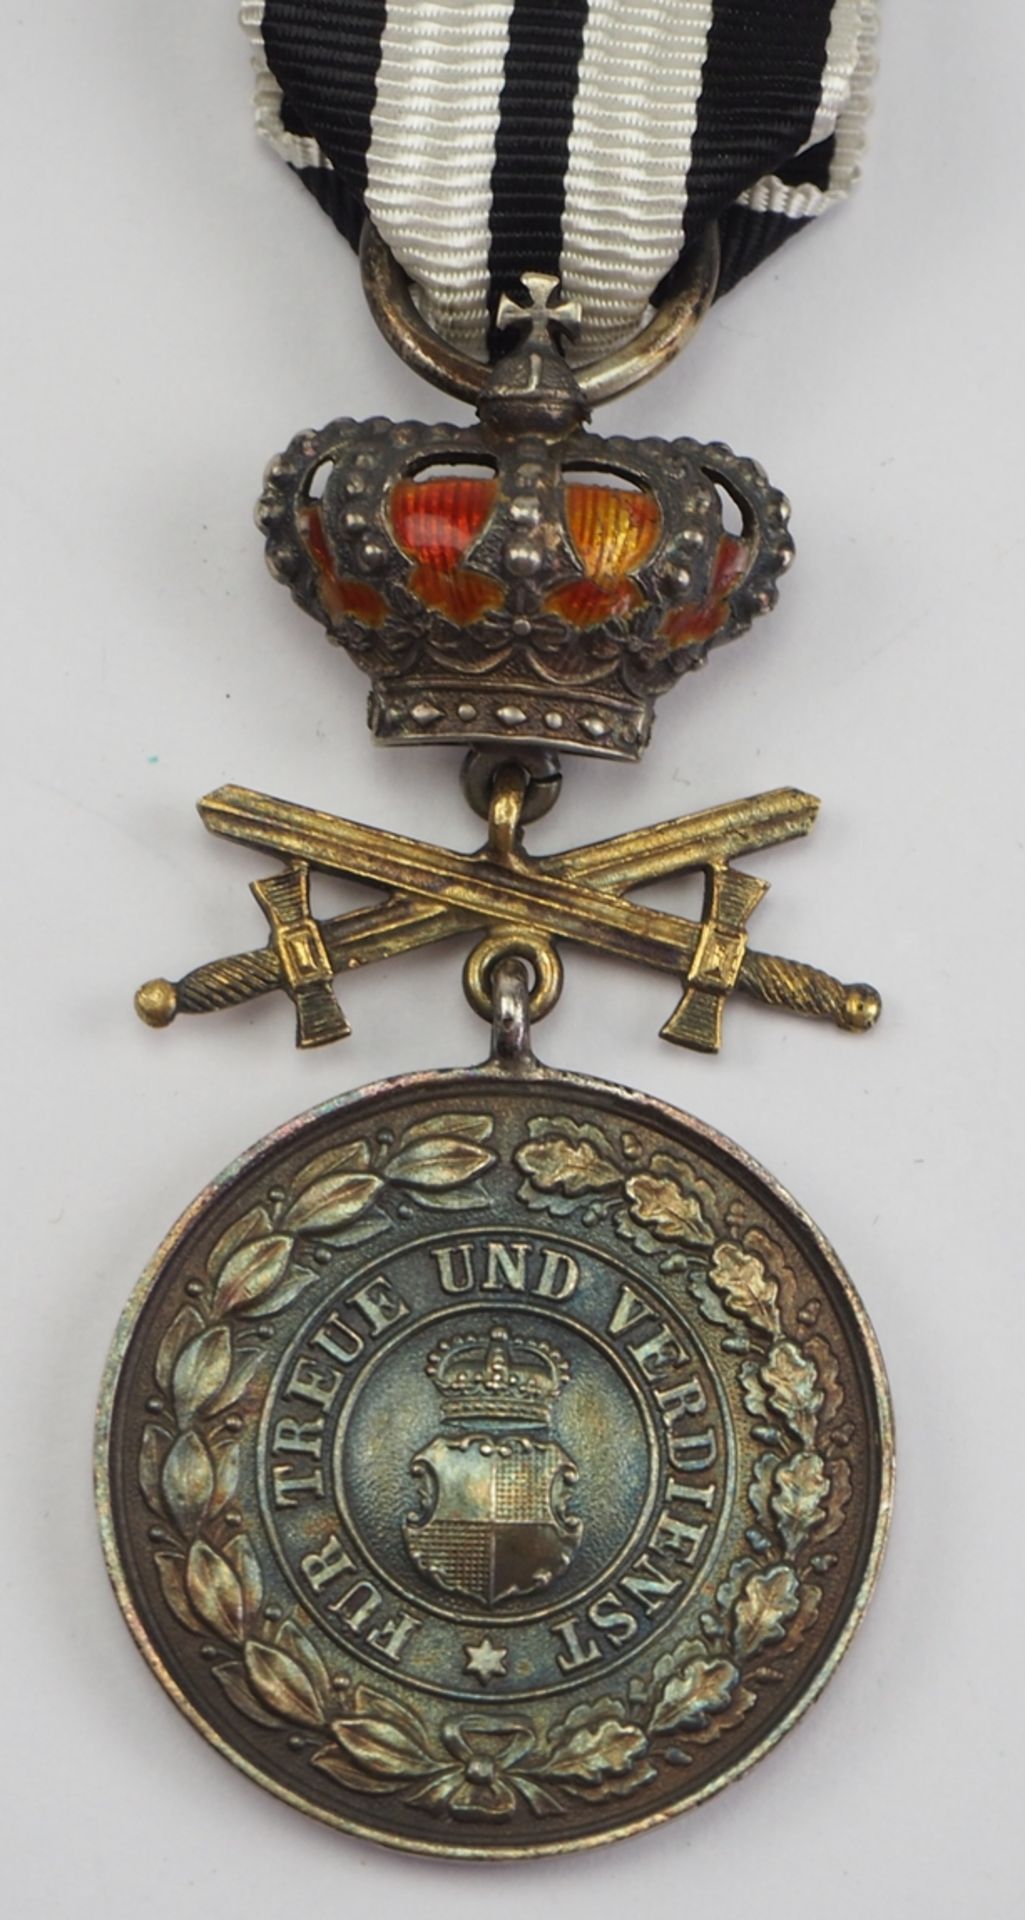 Hohenzollern: Fürstlich Hohenzollernscher Hausorden, Silberne Ehrenmedaille mit Krone und Schwerter - Image 2 of 3